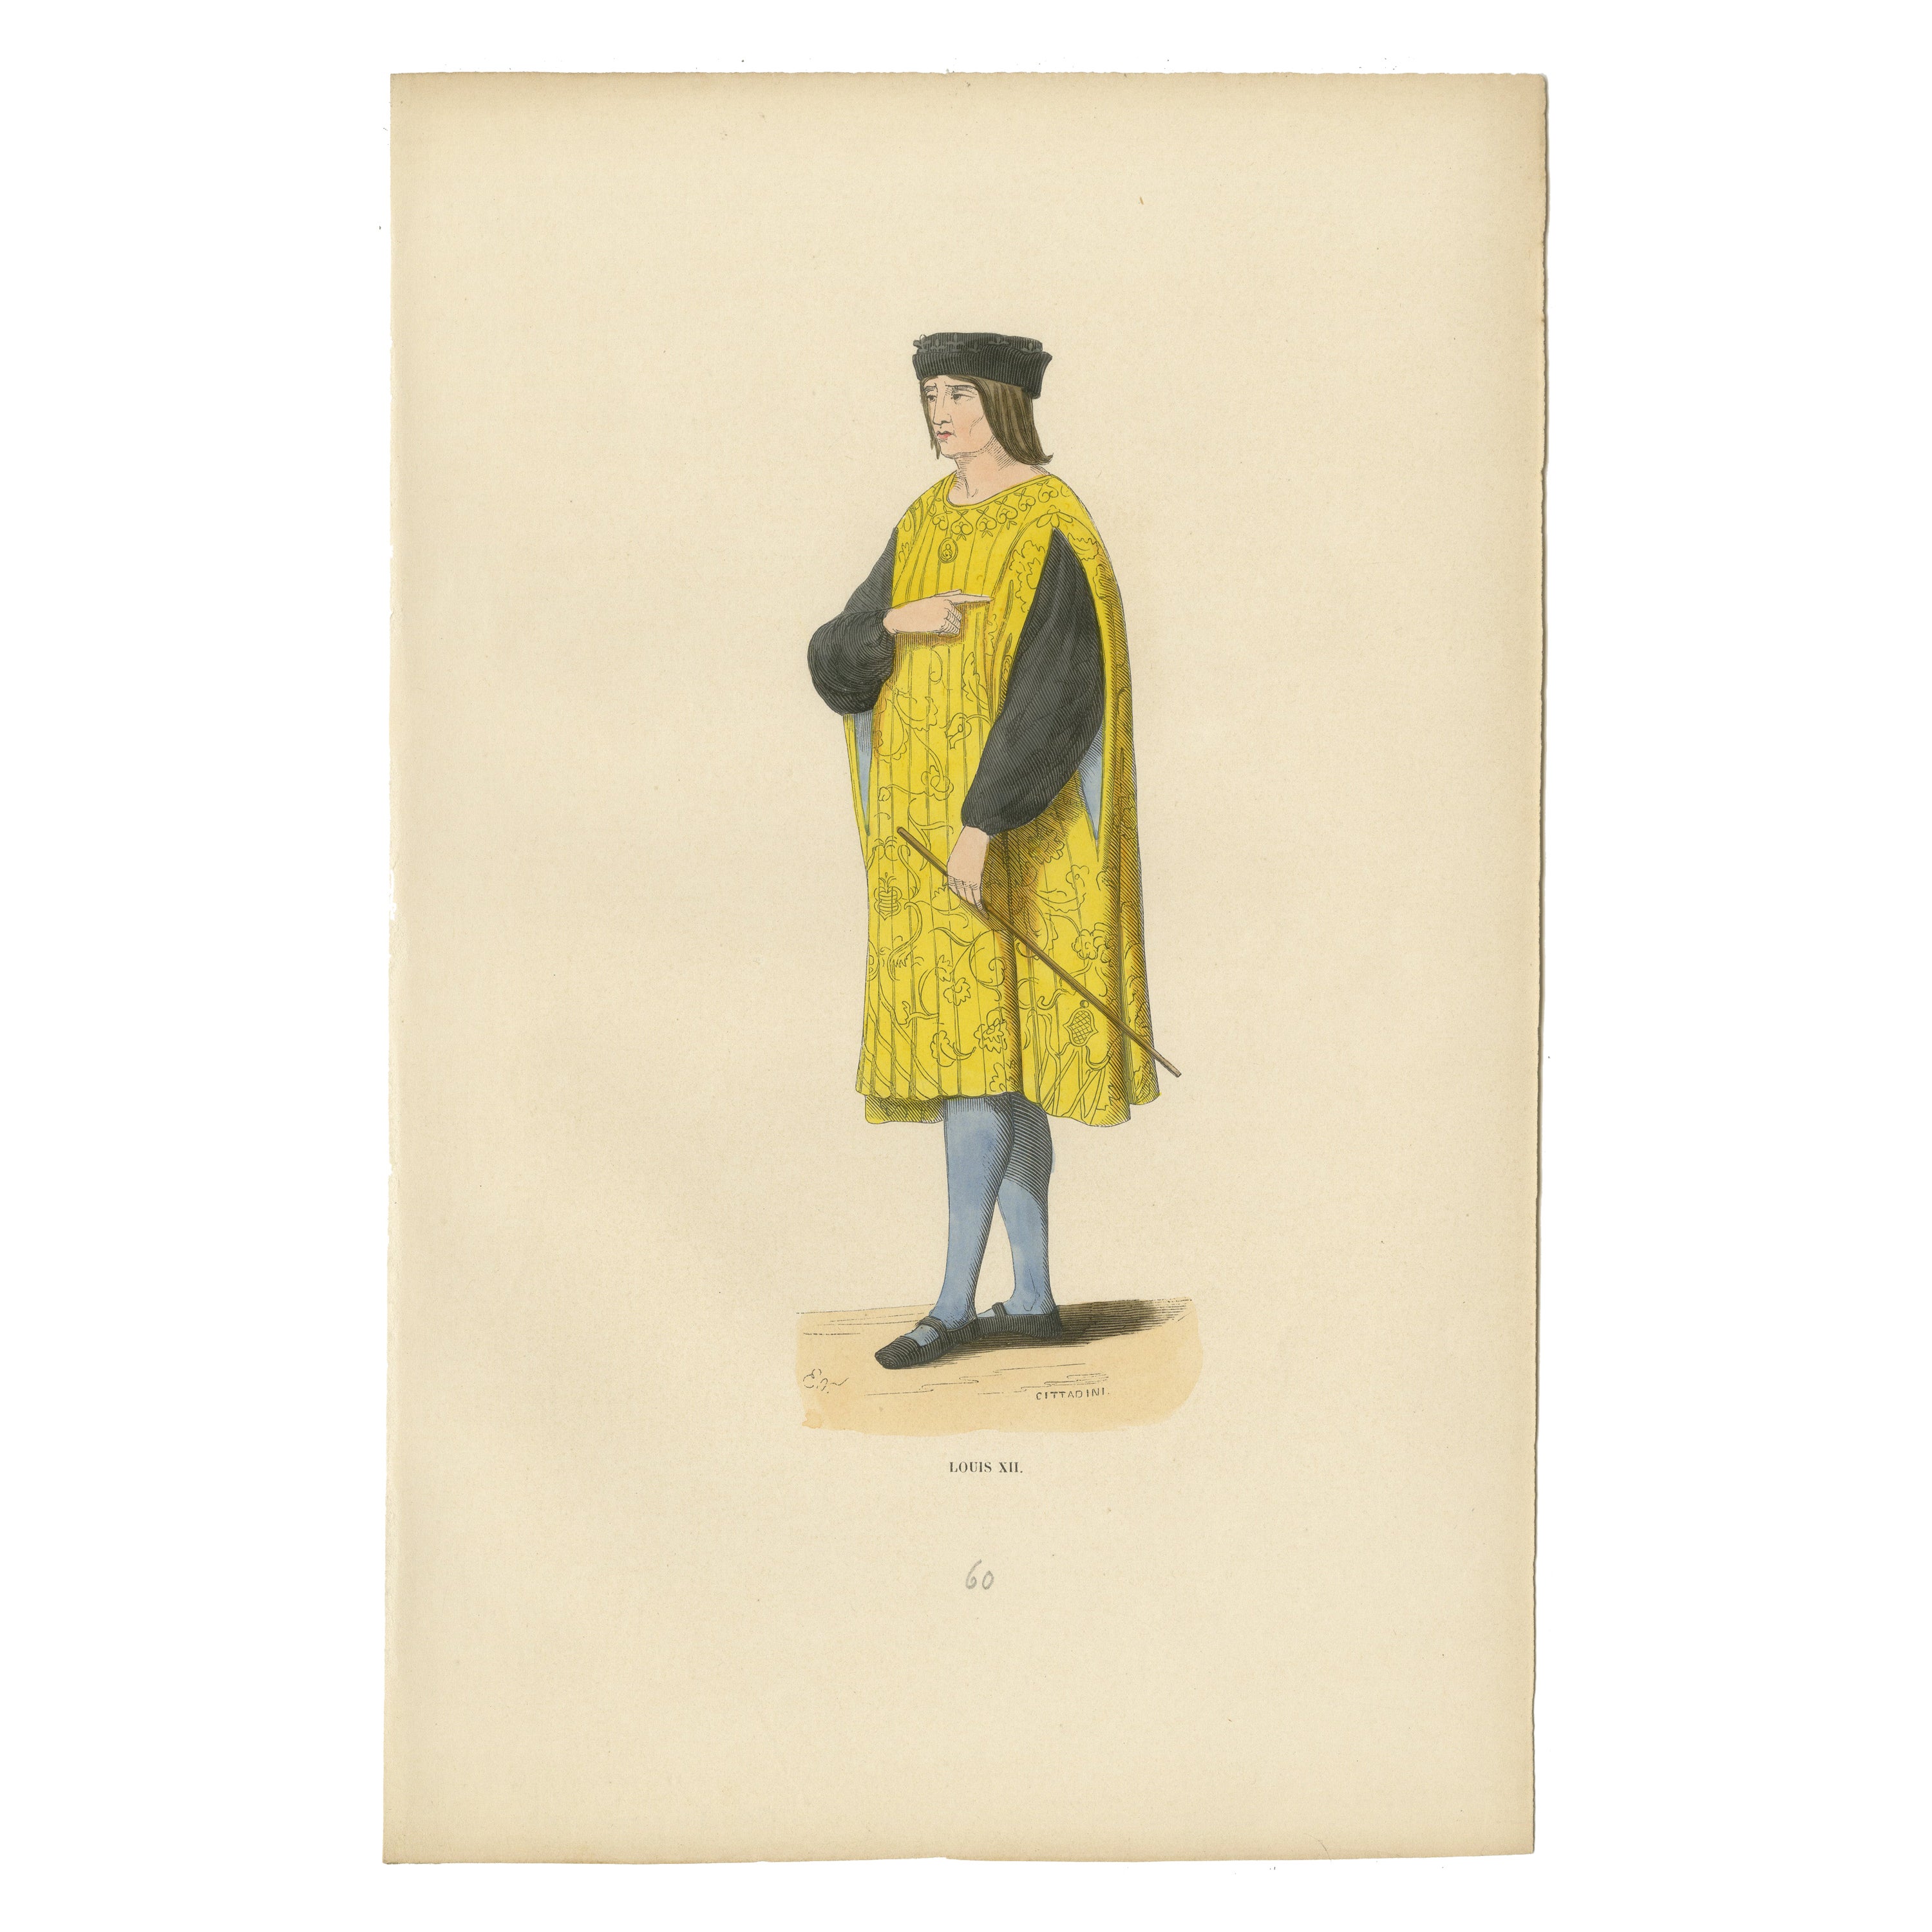 Louis XII : Le roi prudent en tenue royale, 1847